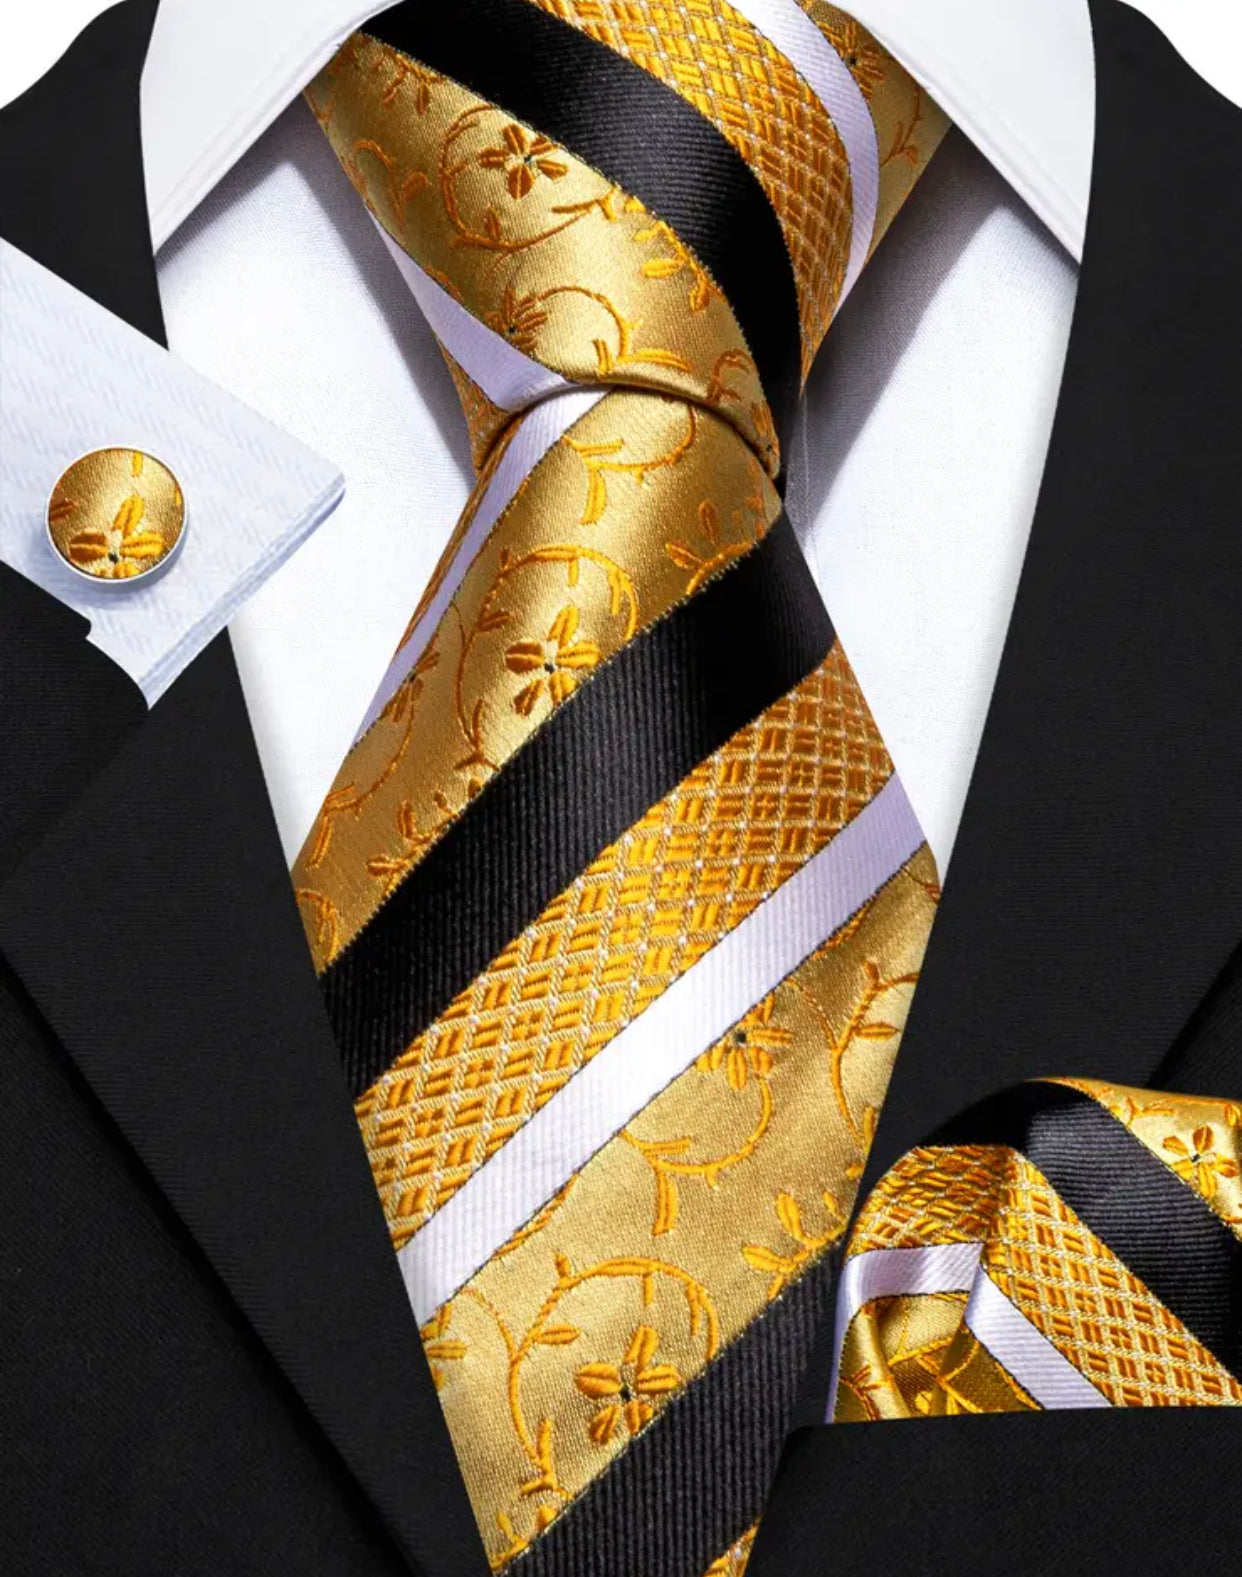 Men’s Silk Coordinated Tie Set - Gold Black Striped (6389)